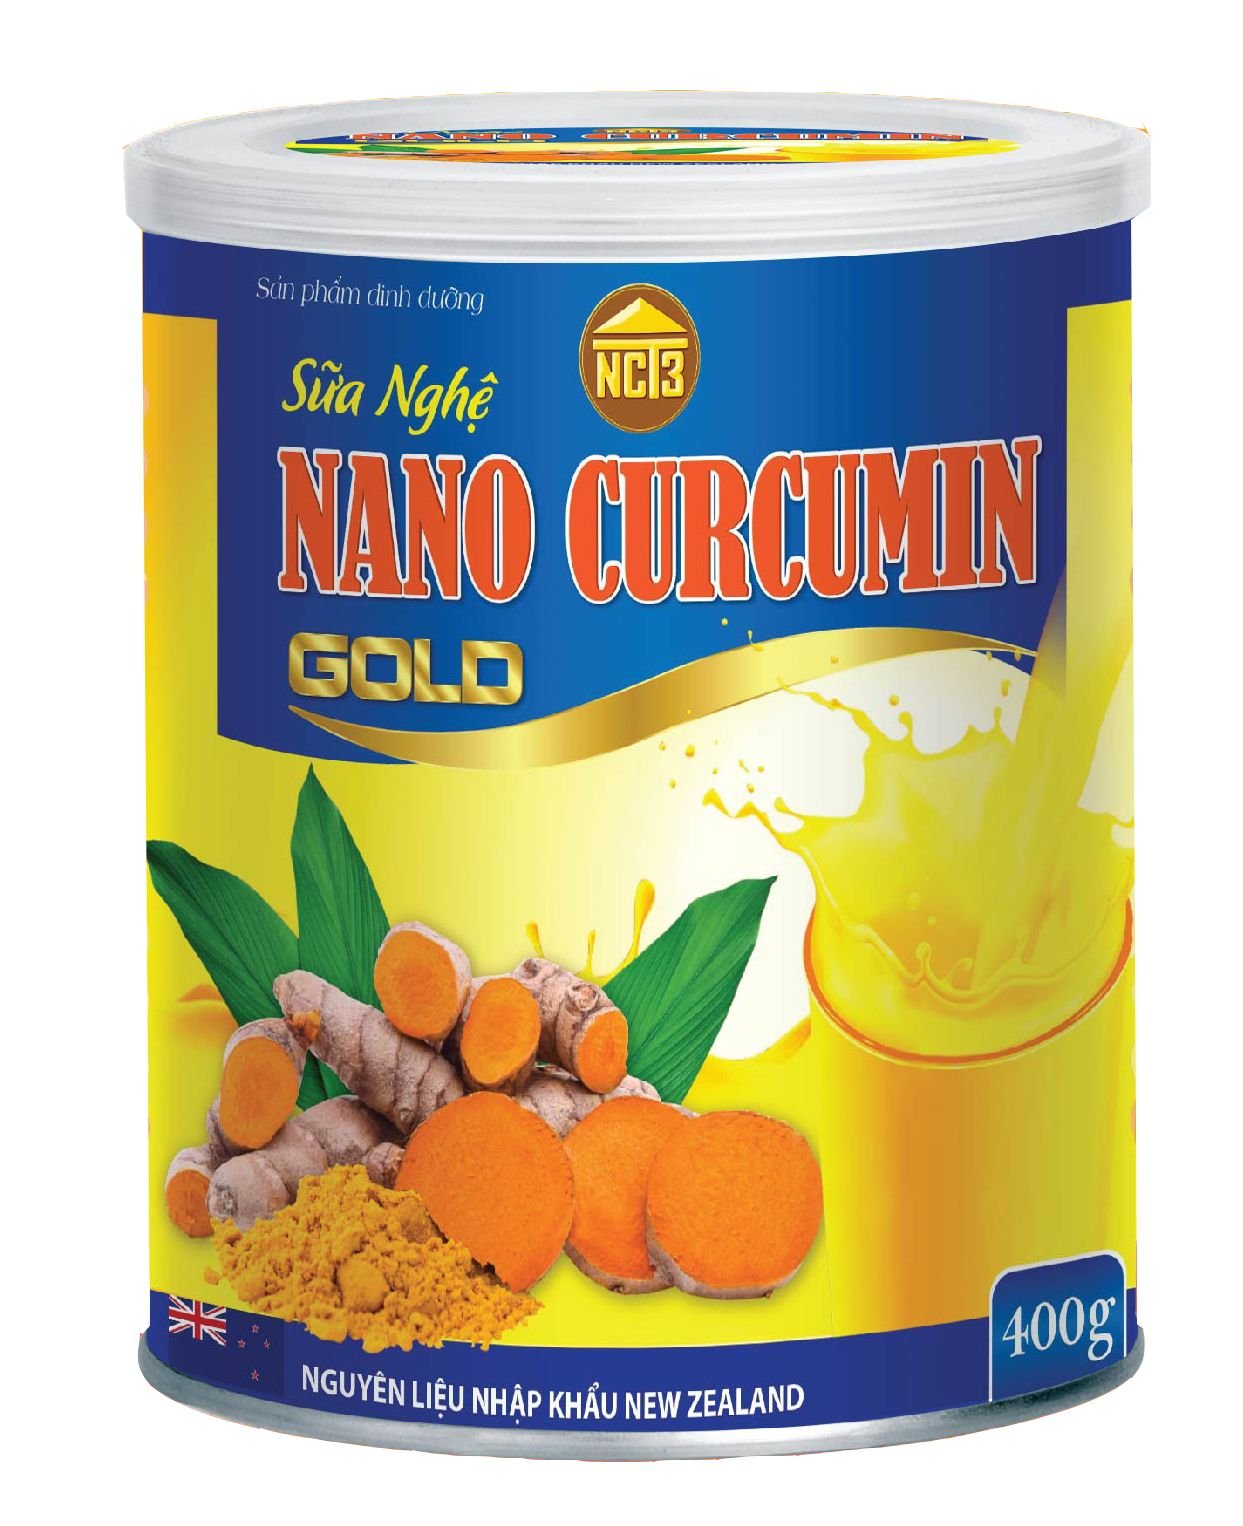 Sữa Nghệ Nano Curcumin Gold - Giảm Đau Dạ Dày, Tá Tràng, Làm Đẹp Da